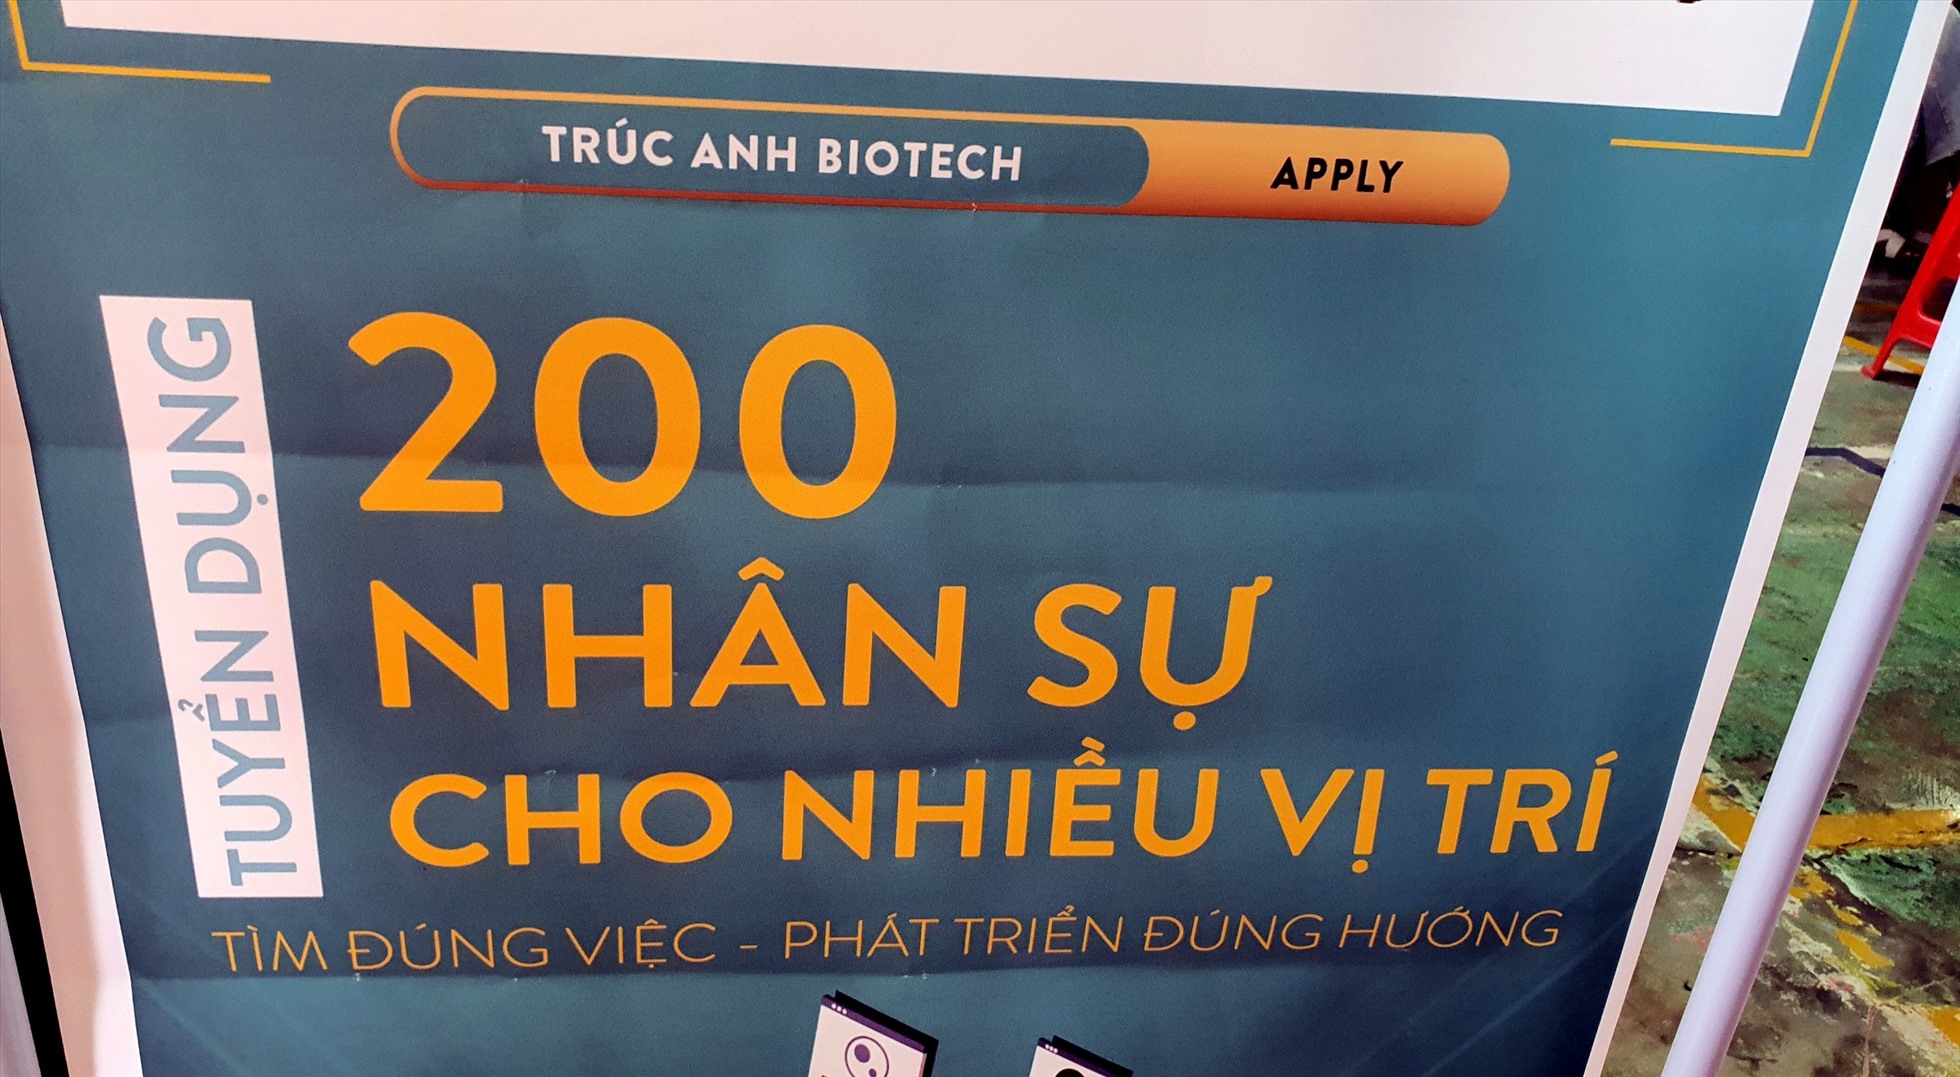 Một doanh nghiệp tại tỉnh Bạc Liêu tuyển dụng 200 vị trí việc làm. Ảnh: Nhật Hồ